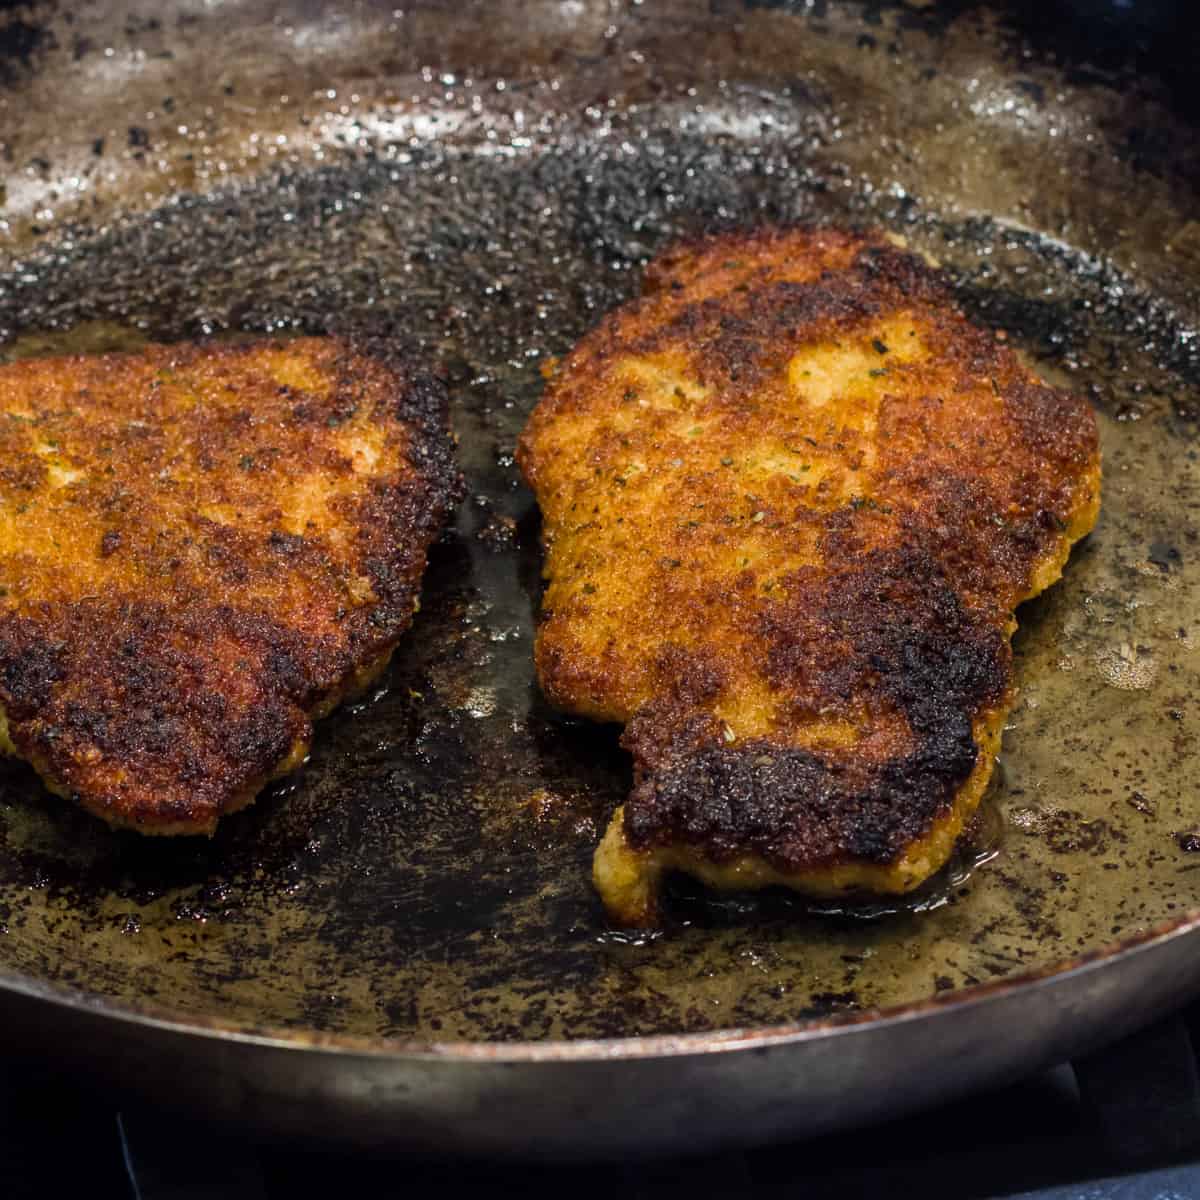 Pork schnitzel in a frying pan.